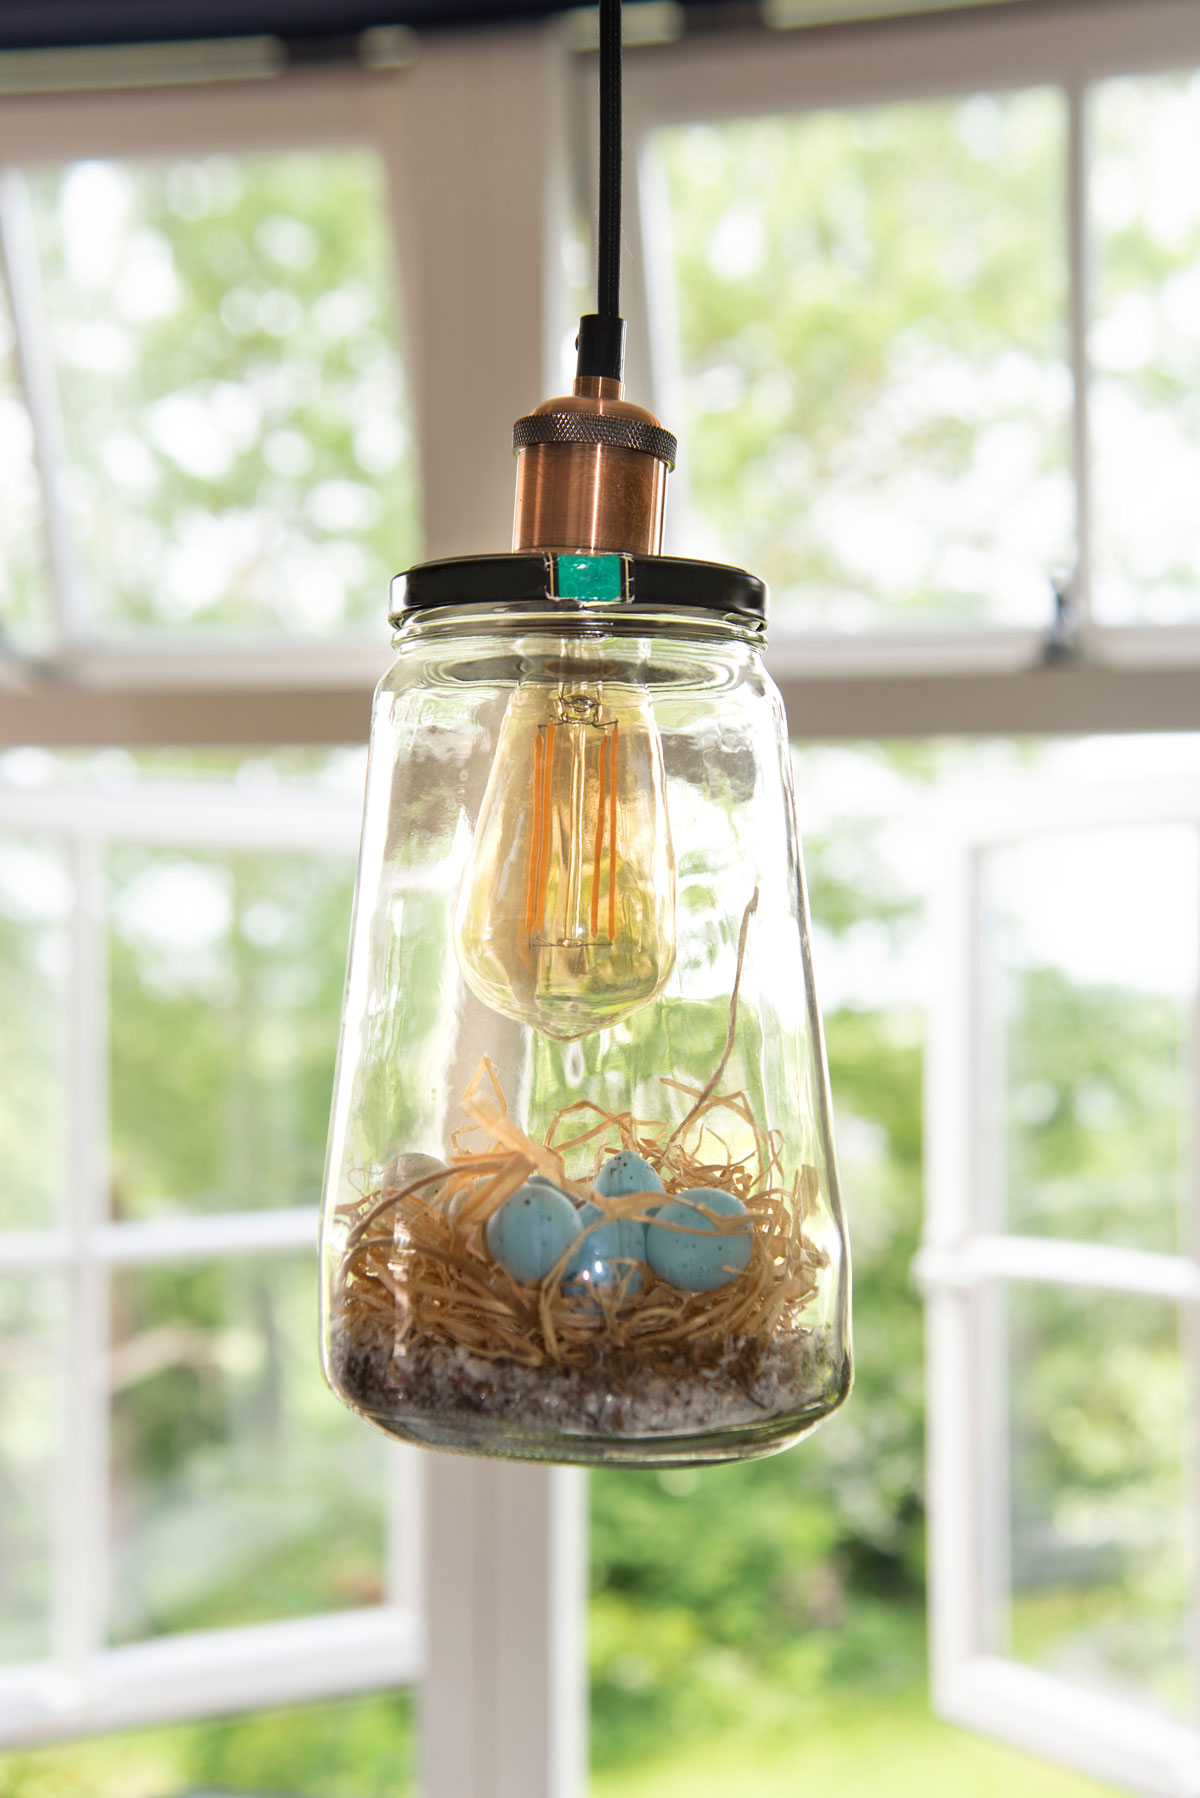 Lampa vyrobená ze sklenic